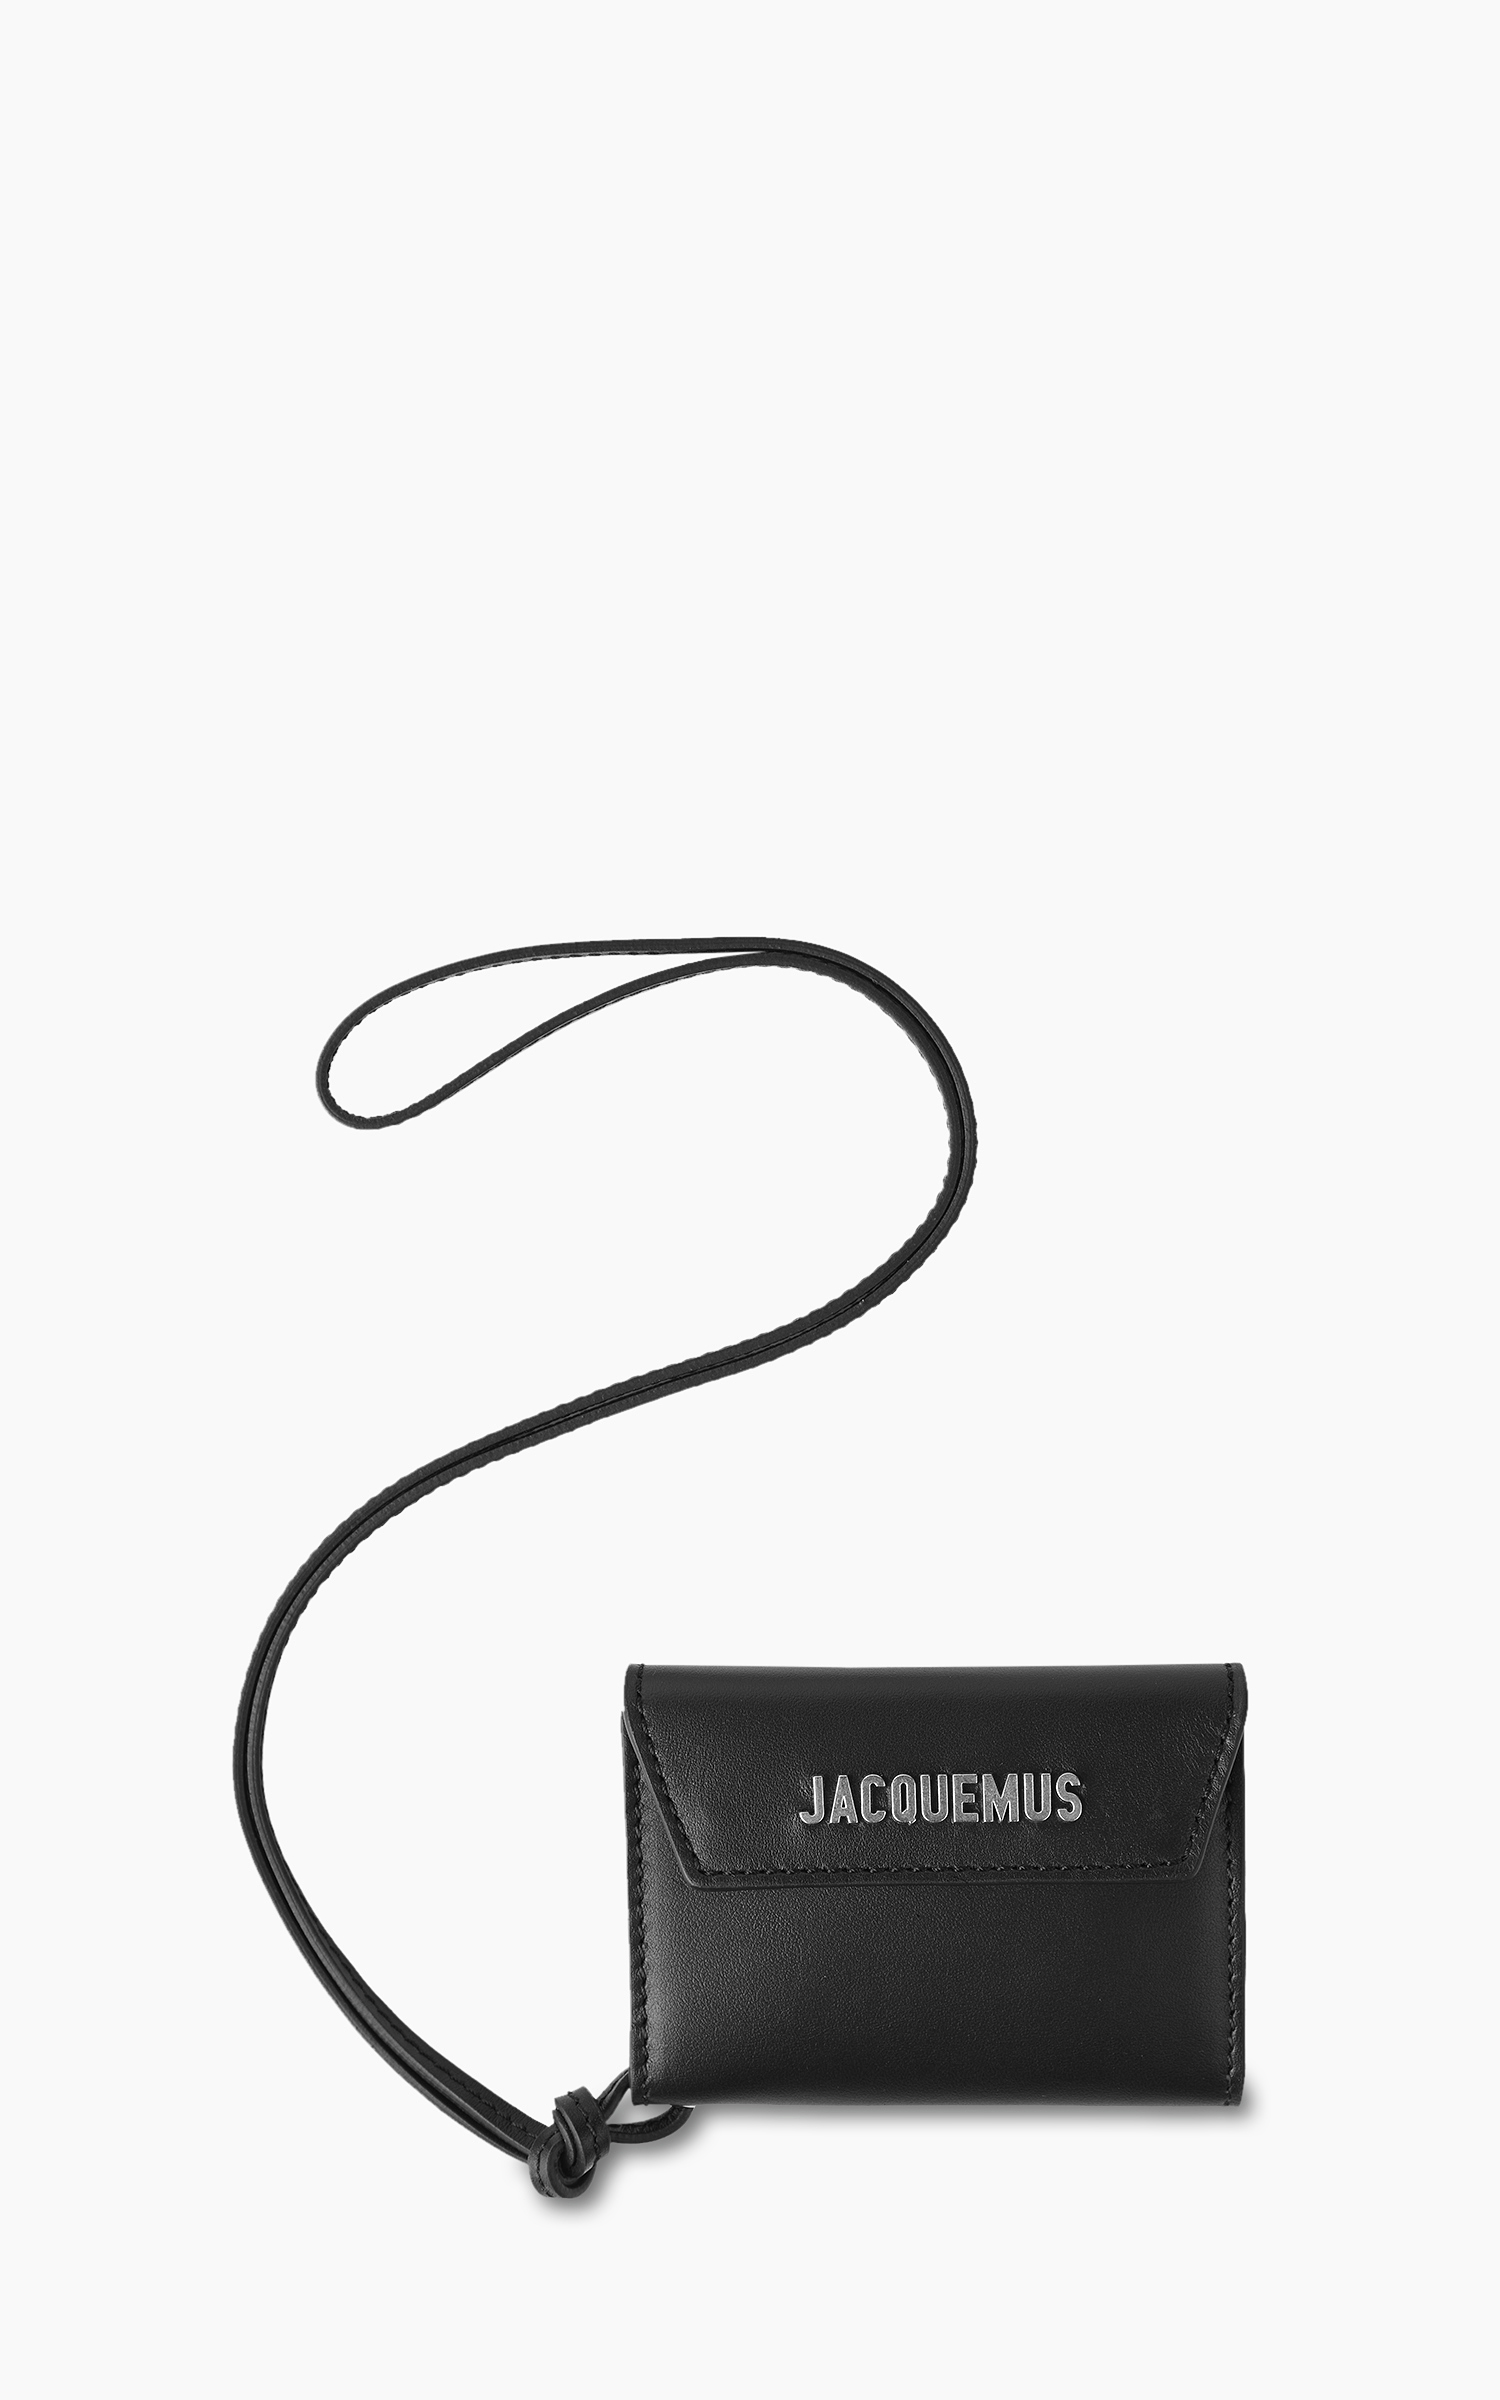 Jacquemus Le Porte Jacquemus Wallet Black | Cultizm